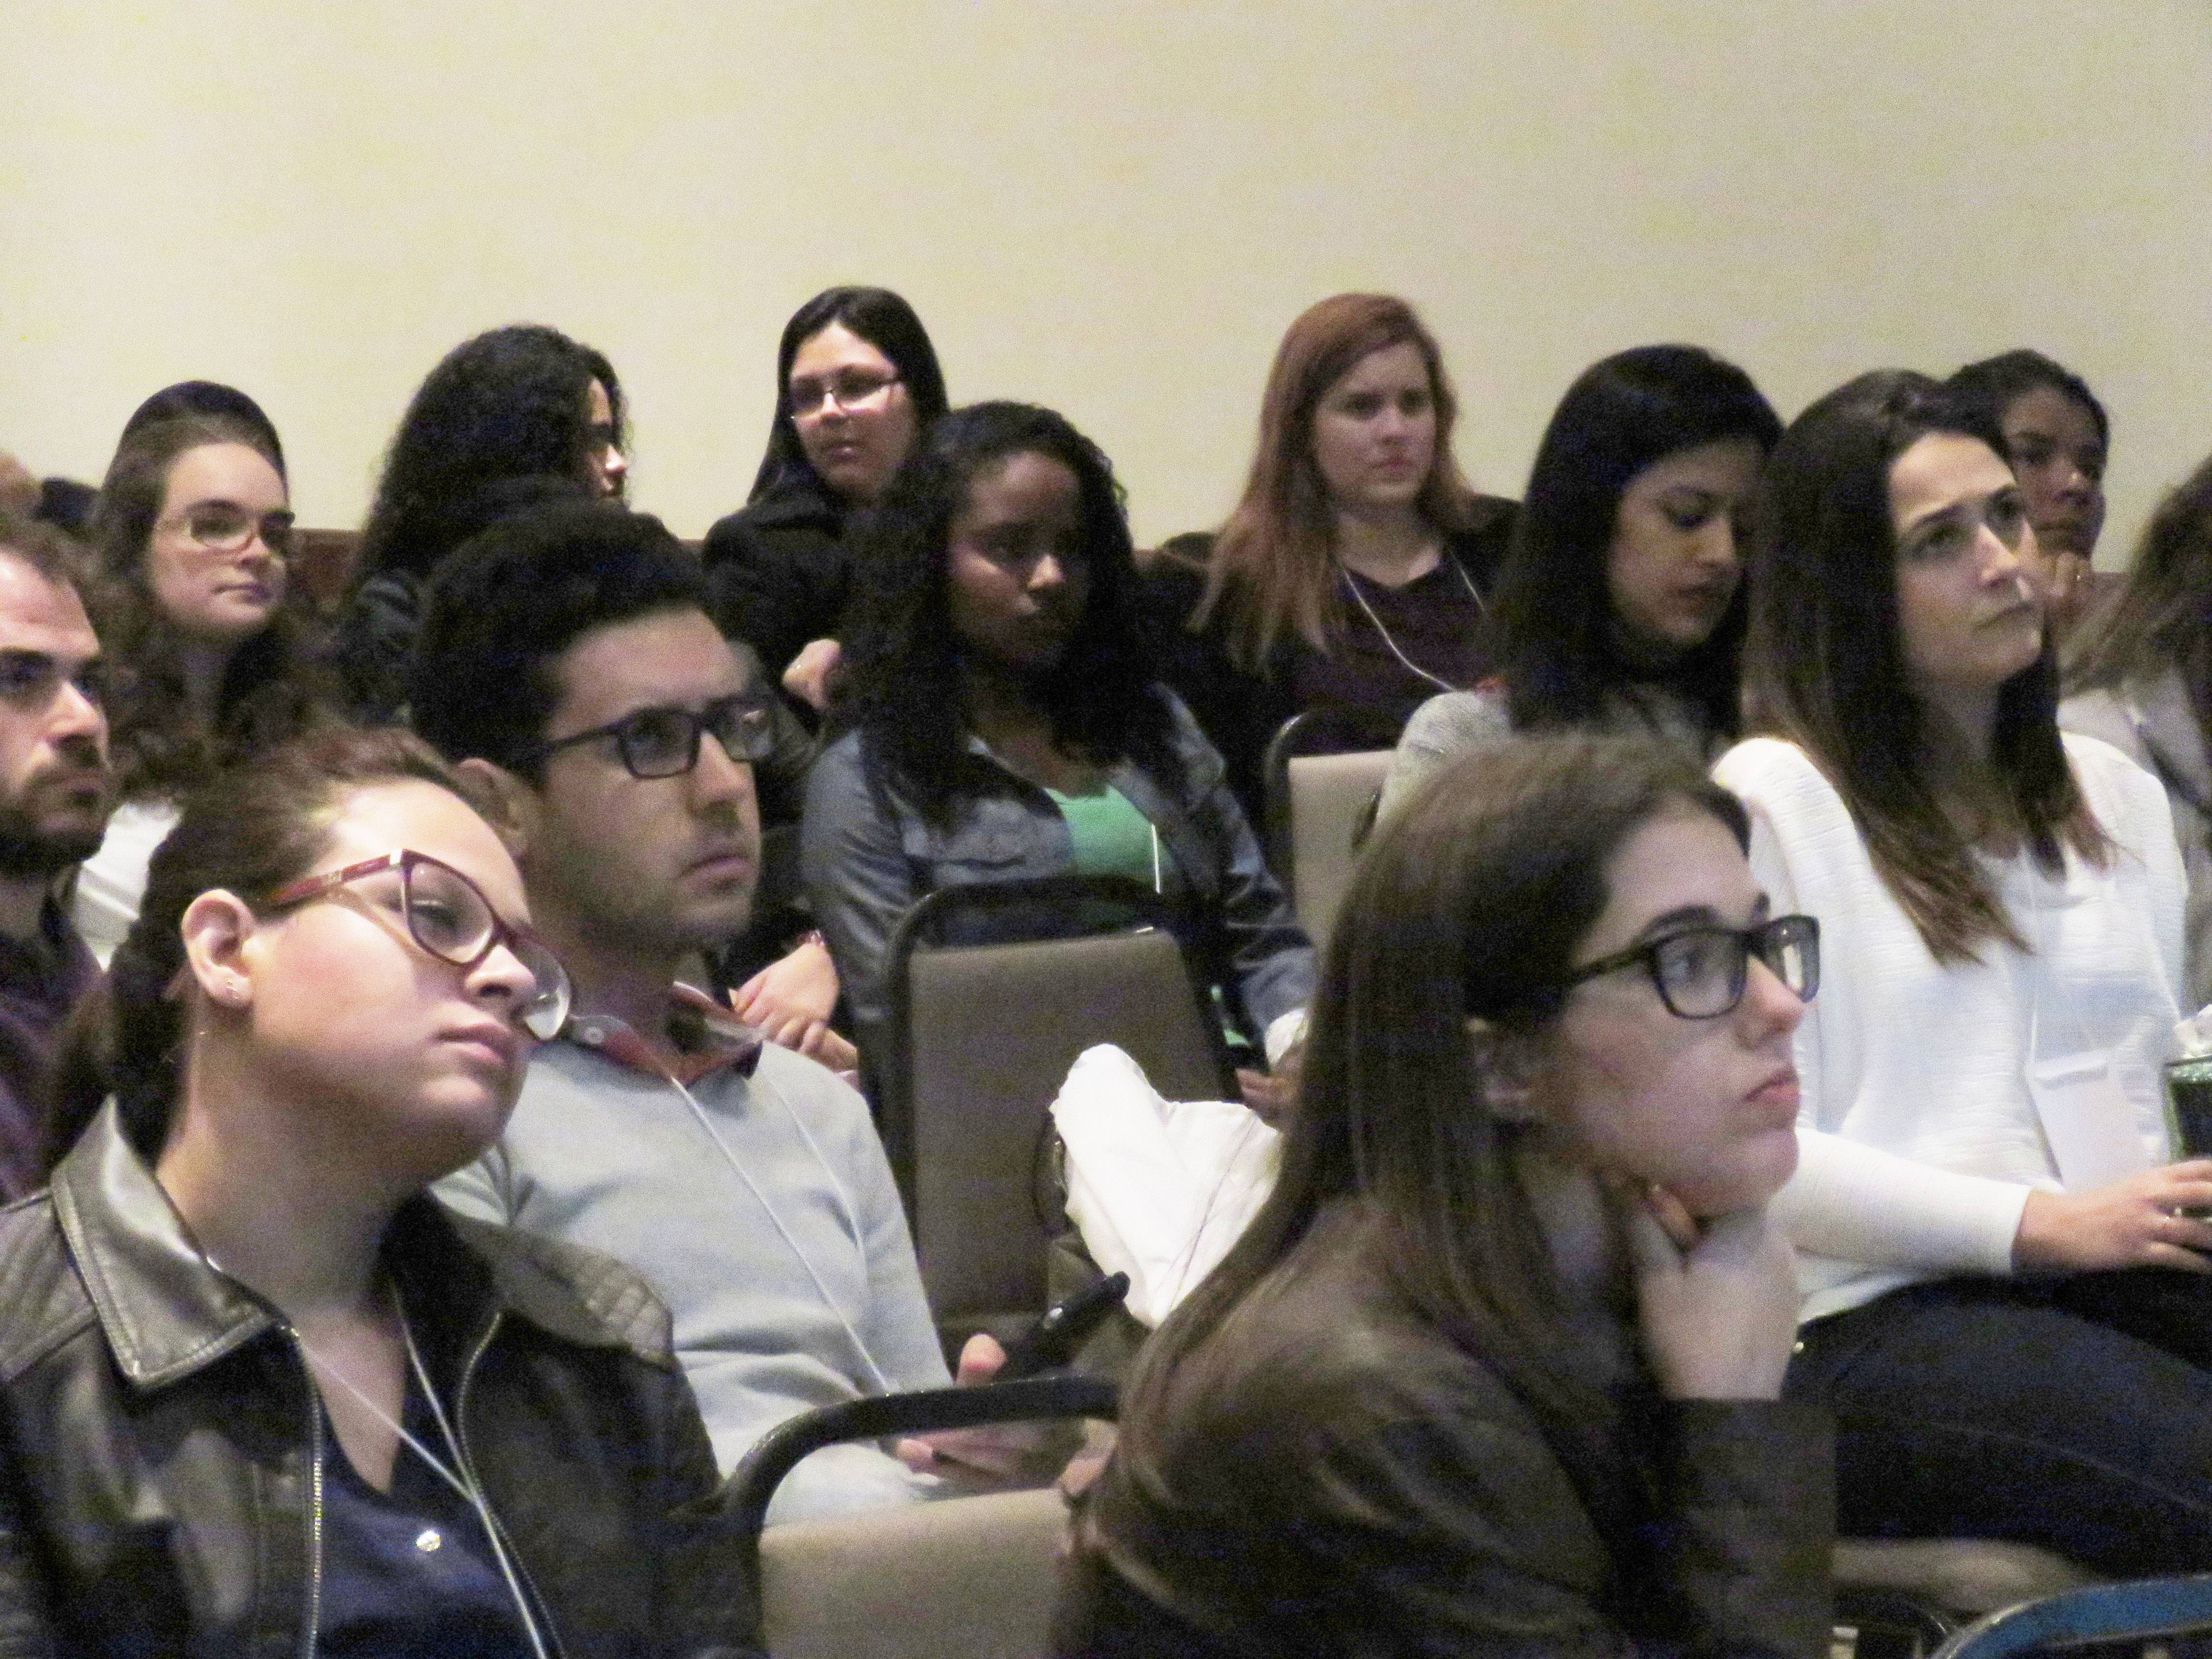 A imagem mostra diversos participantes sentados olhando na mesma direção enquanto ouvem uma palestra do Research in Germany